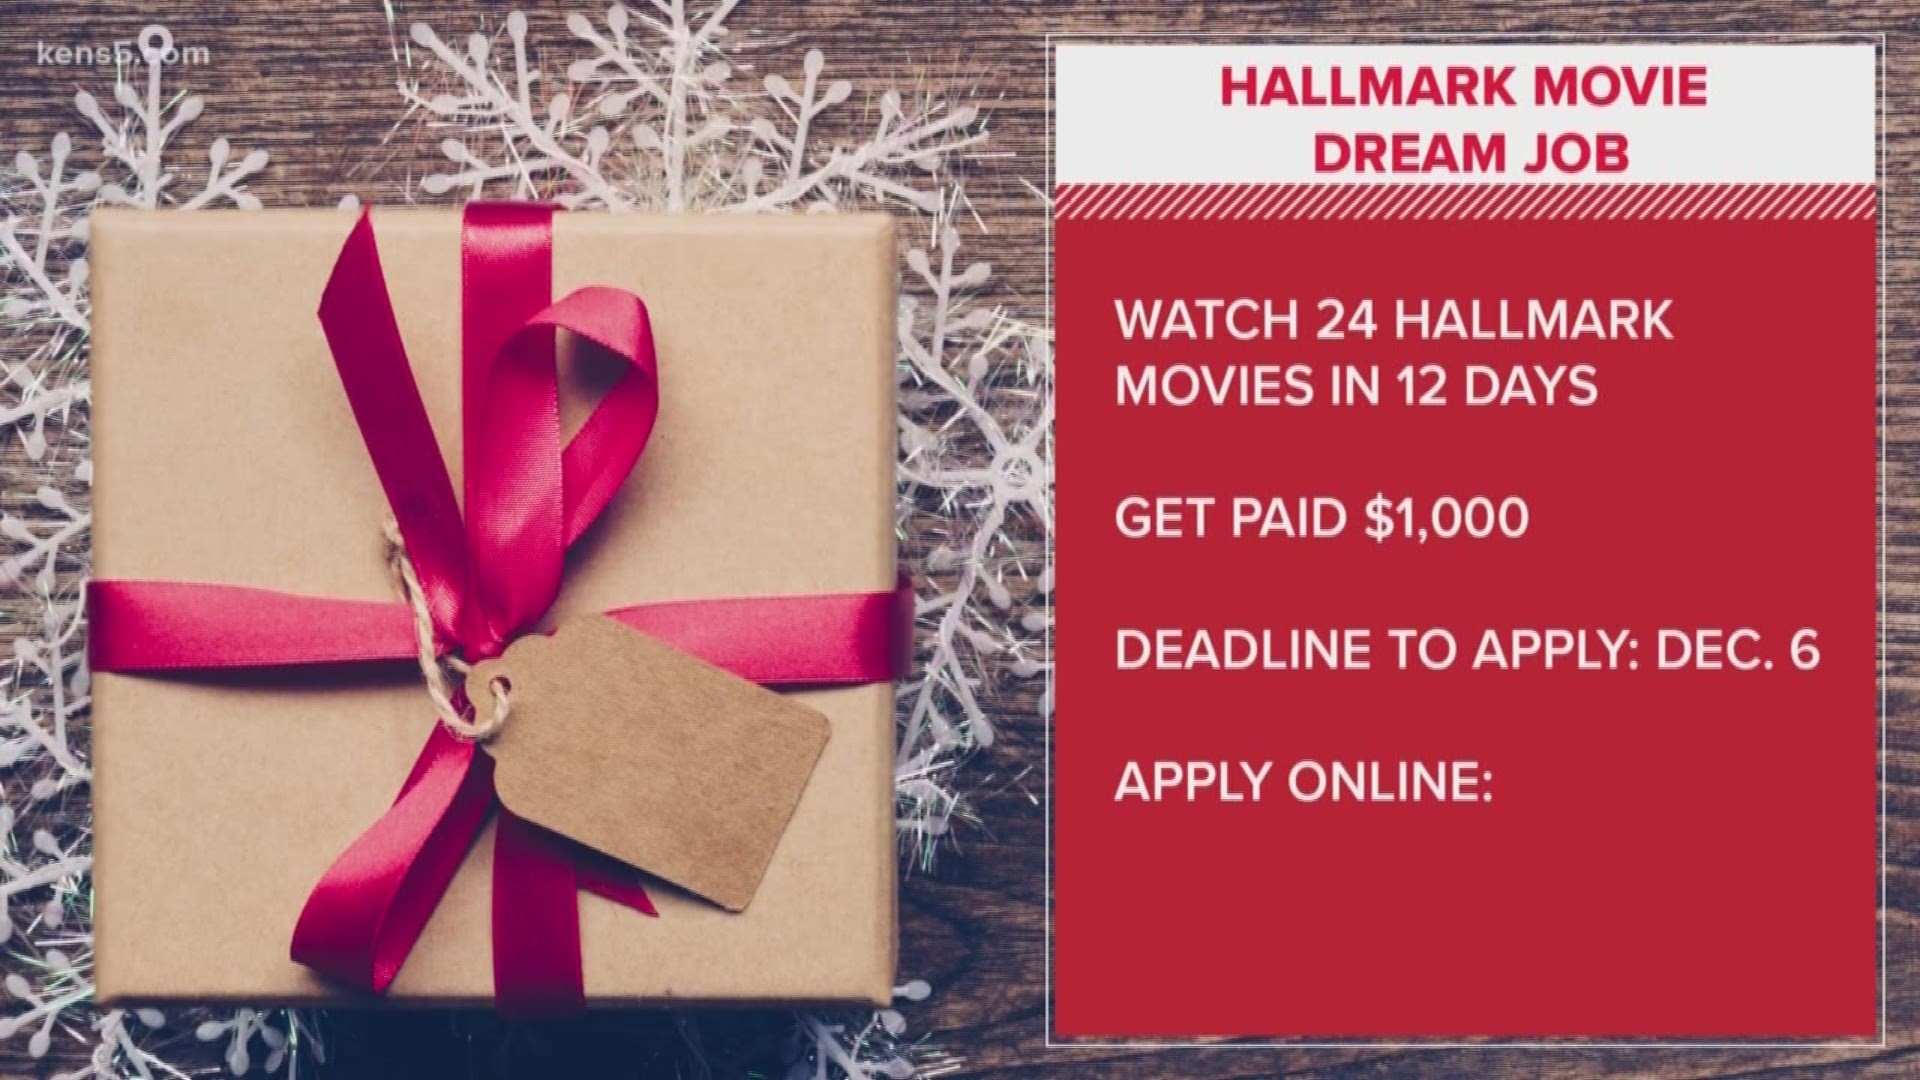 Get paid 1,000 to watch Hallmark movies